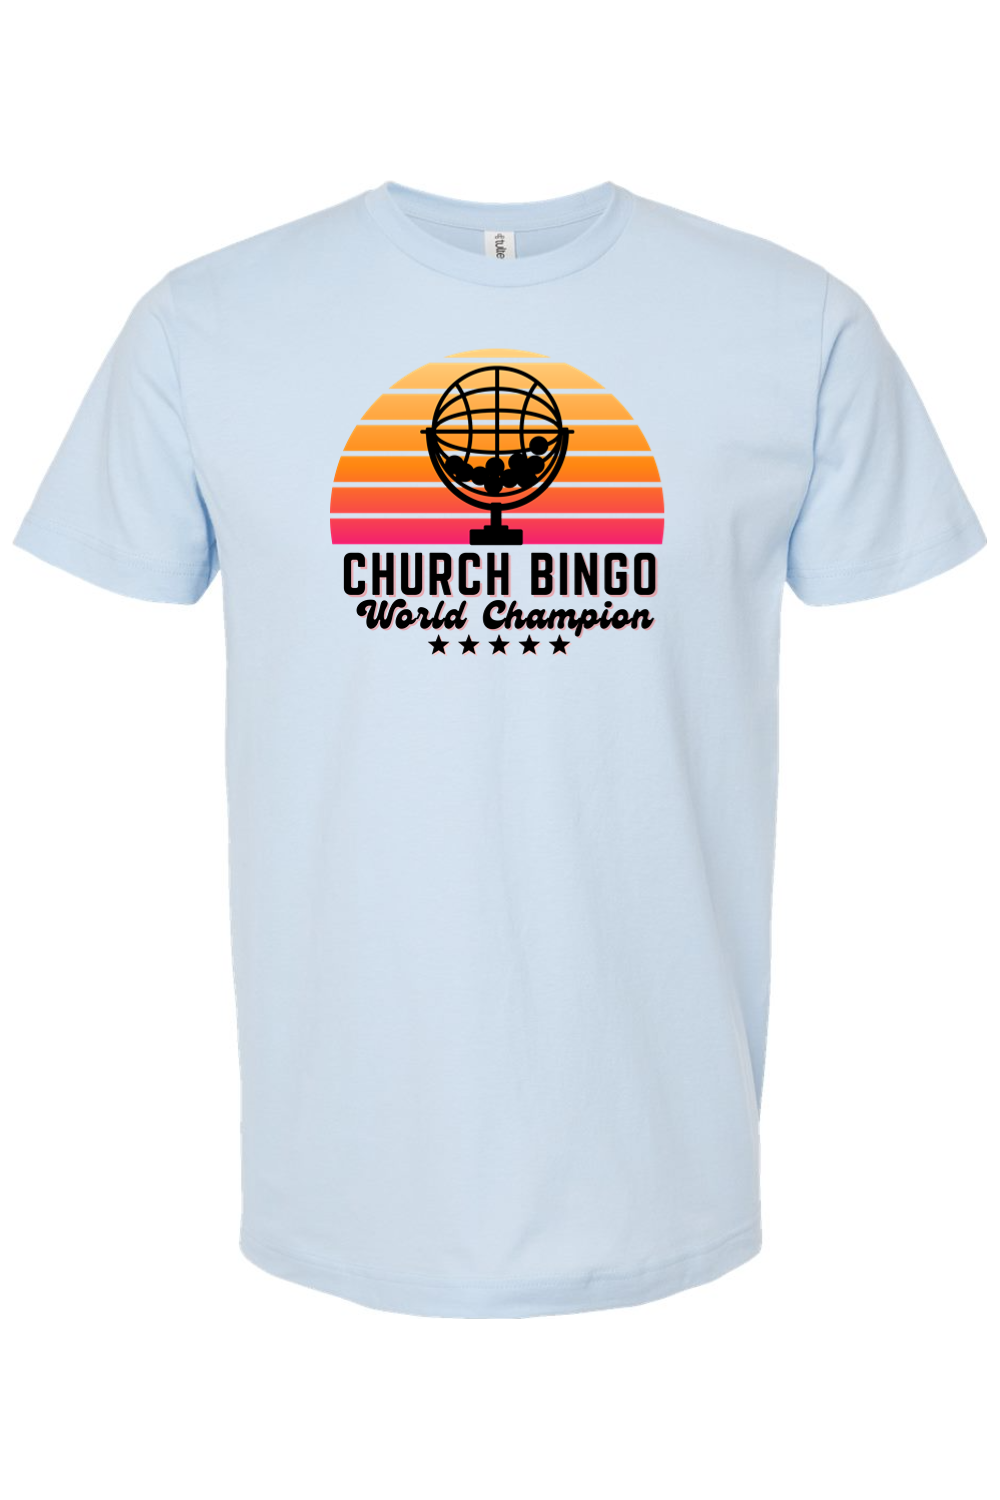 Church Bingo World Champion